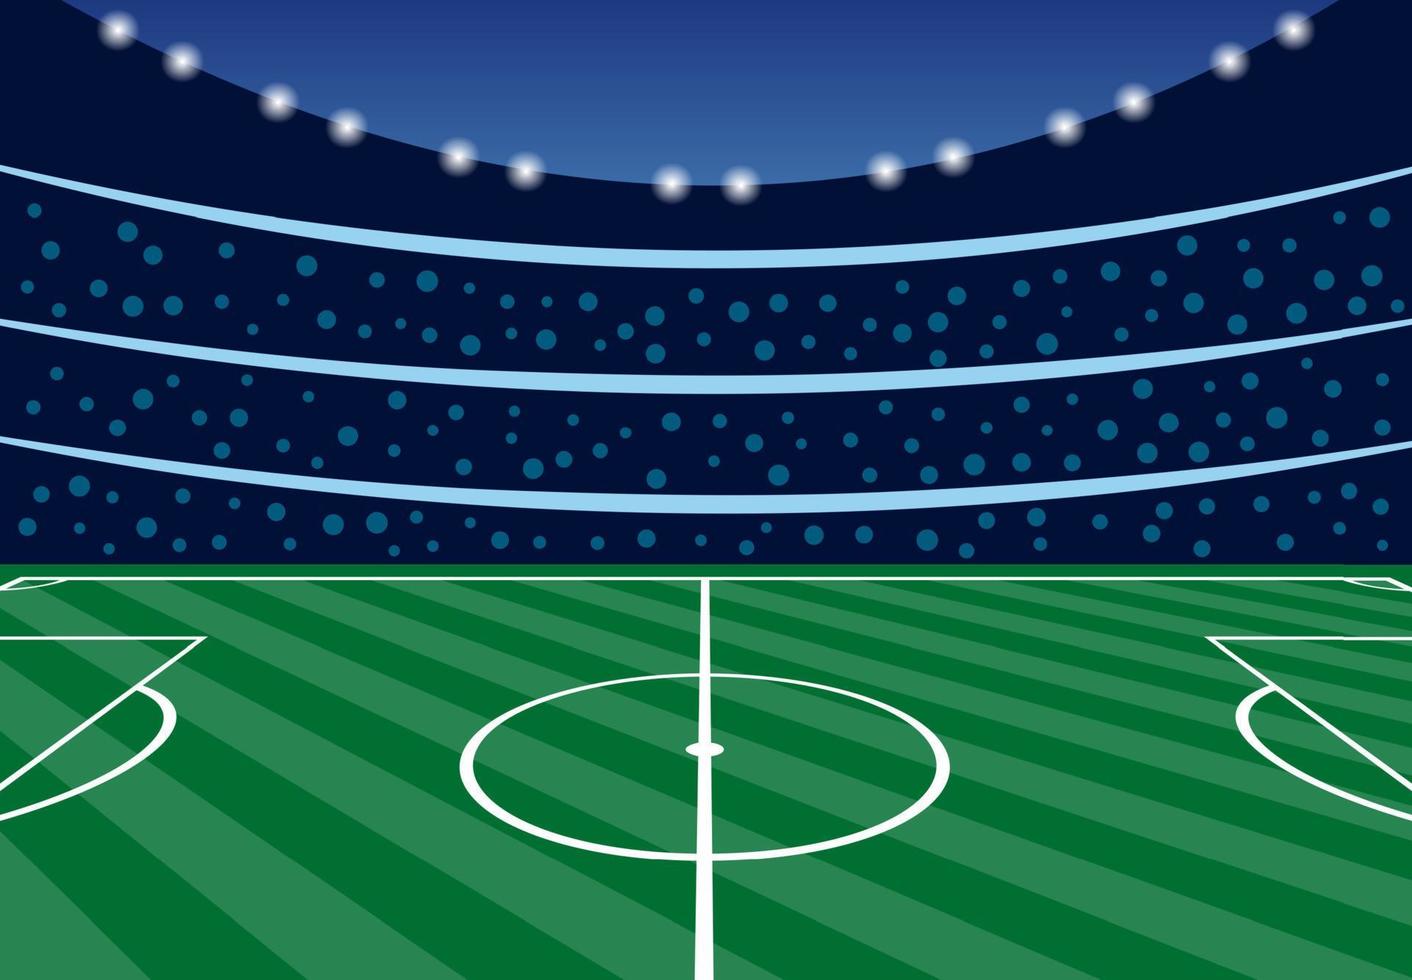 stade de football aux tribunes remplies le soir avant le début du match. illustration vectorielle vecteur